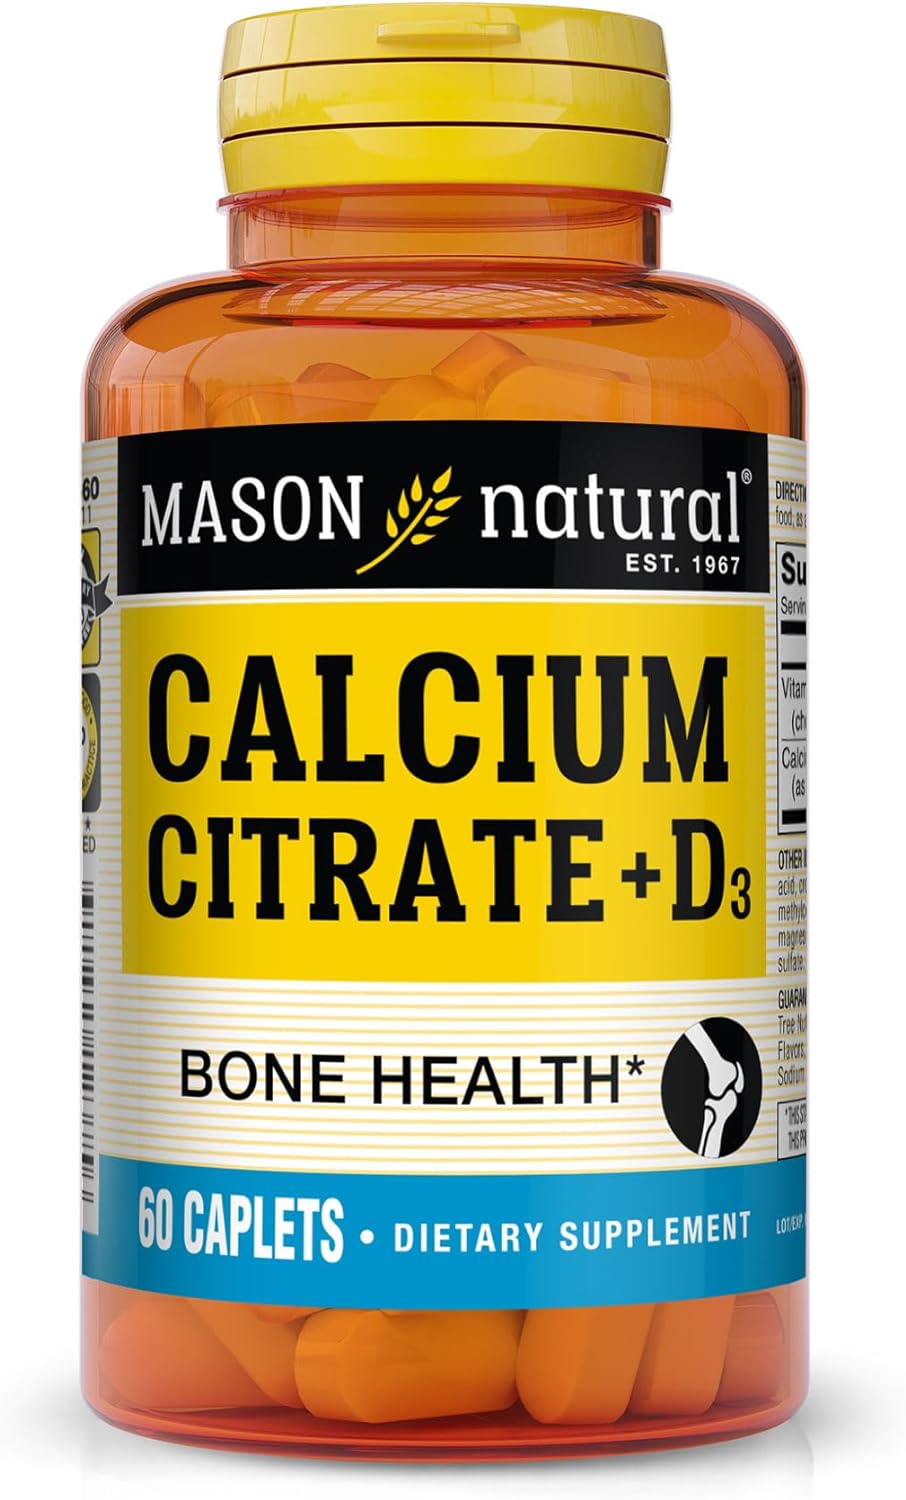 Calcium Citrate Plus Vitamin D3